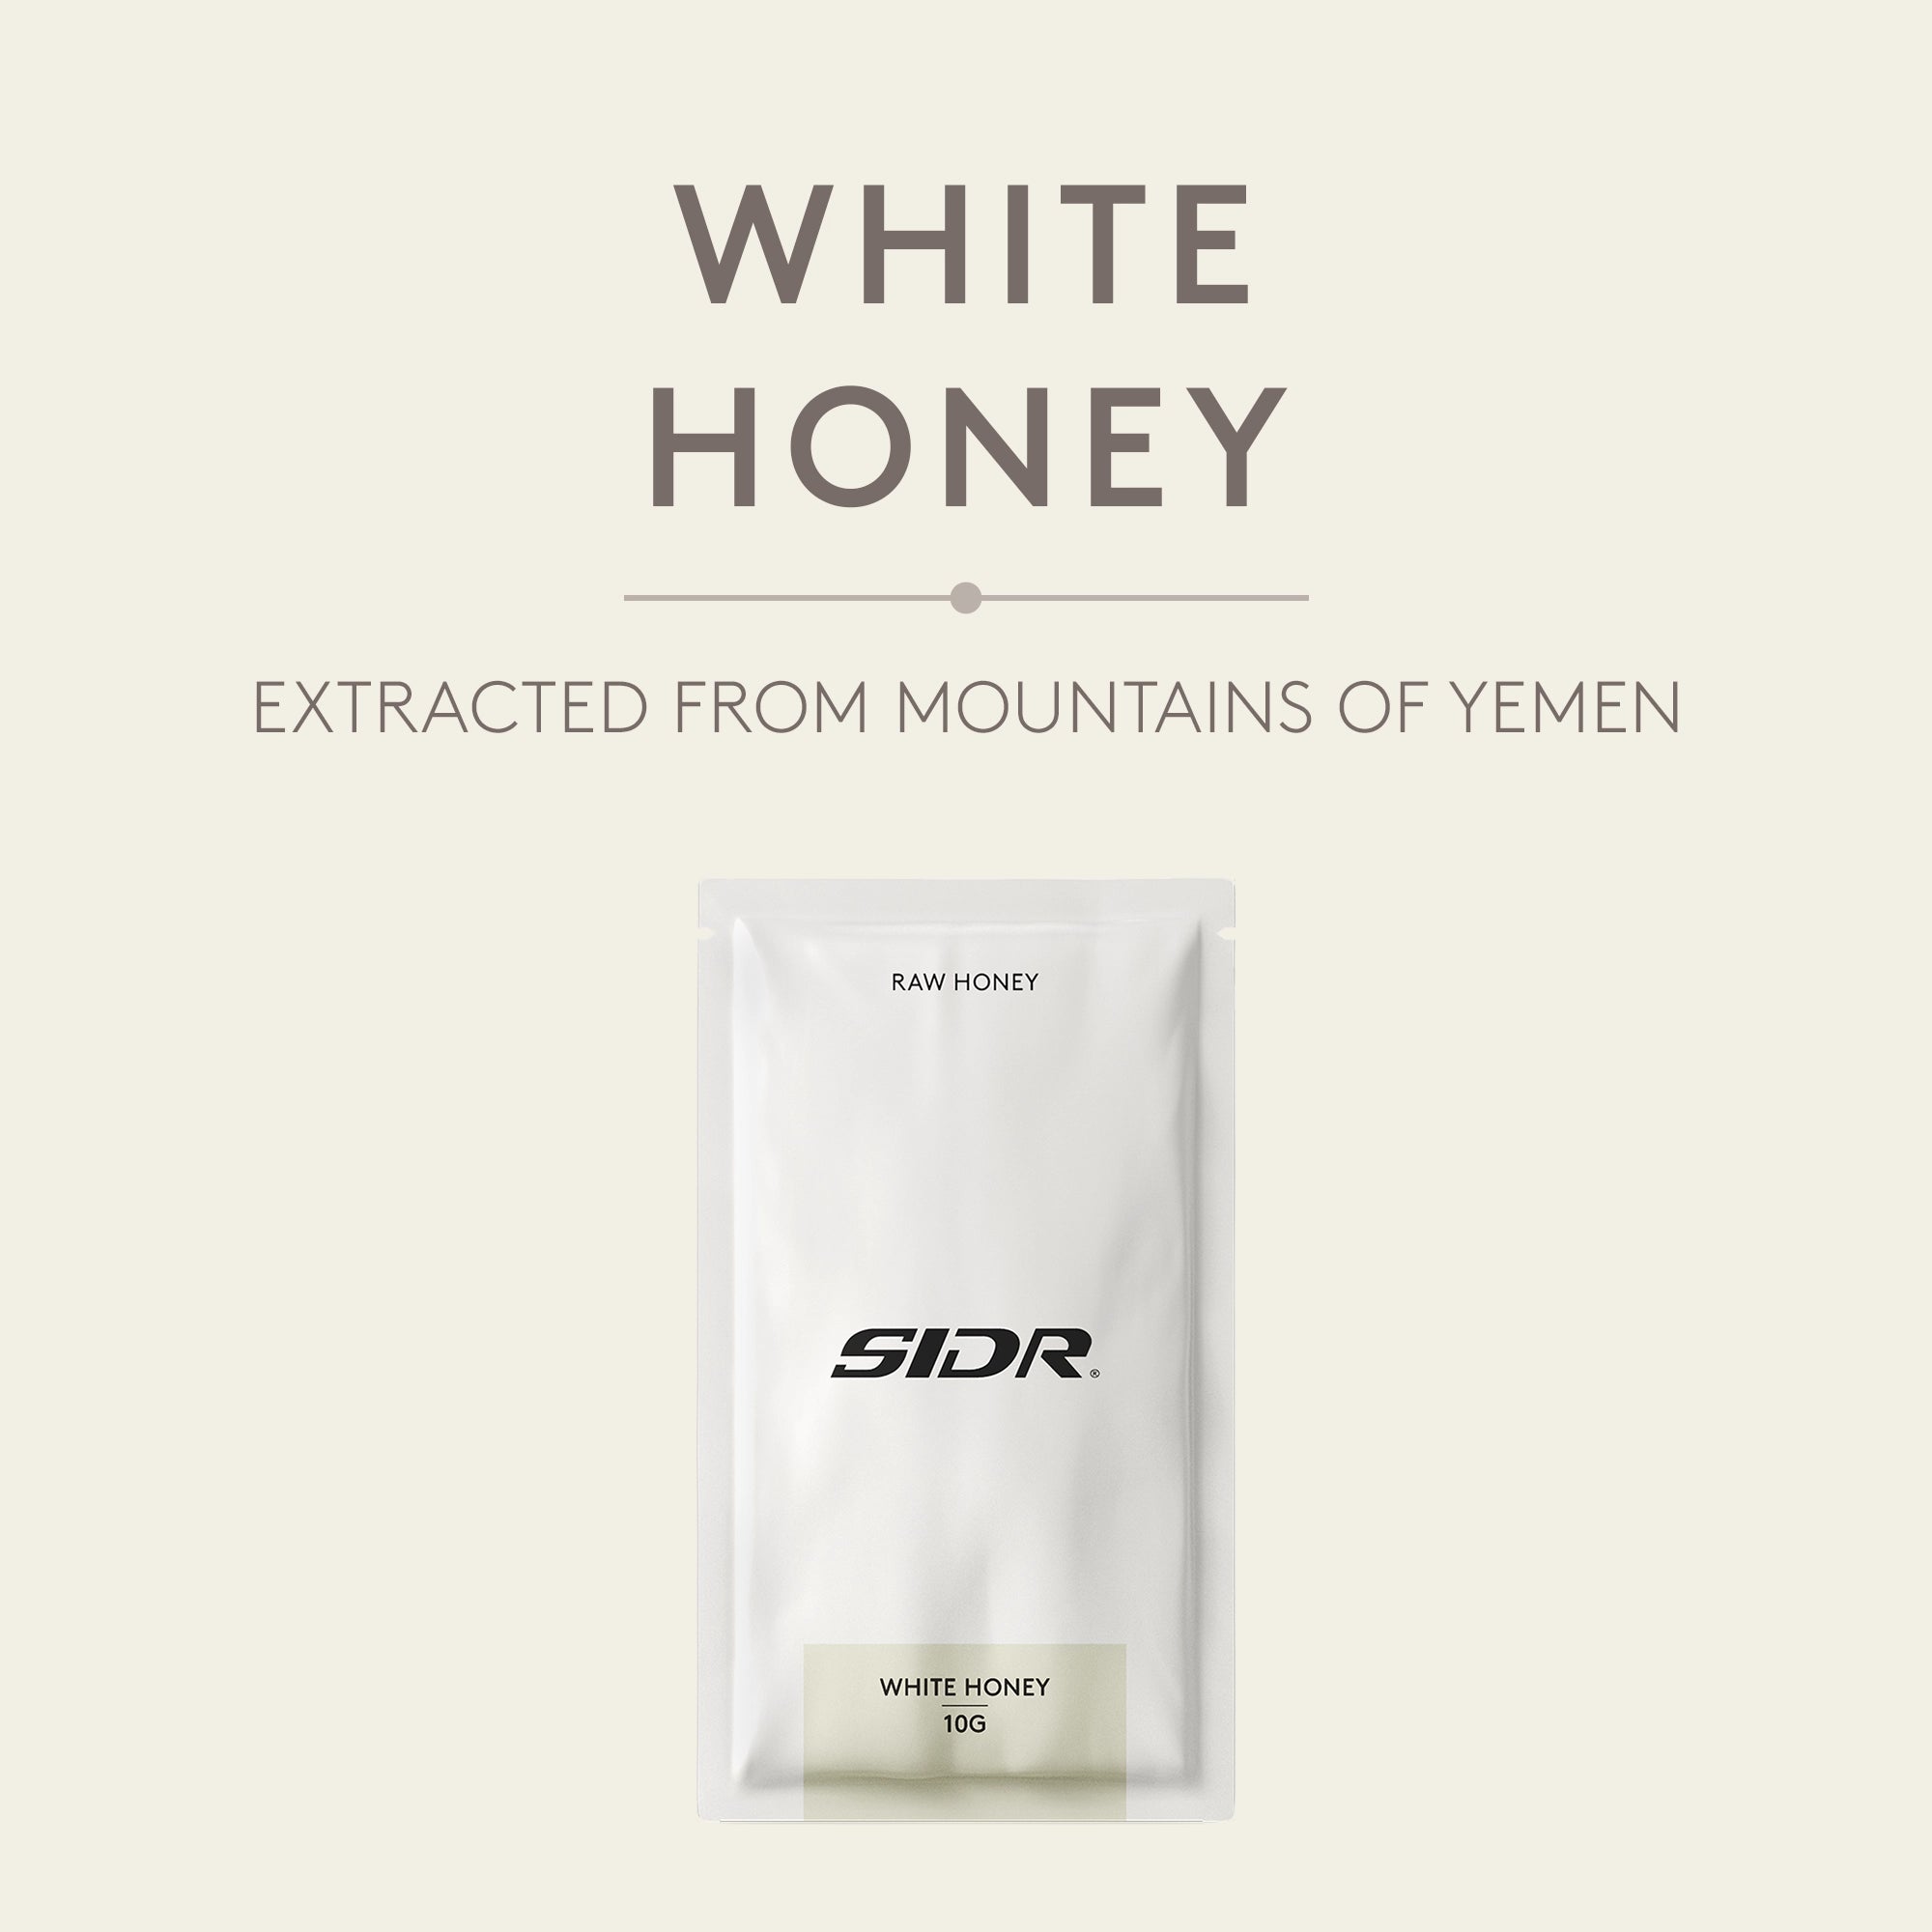 white honey packet from yemen